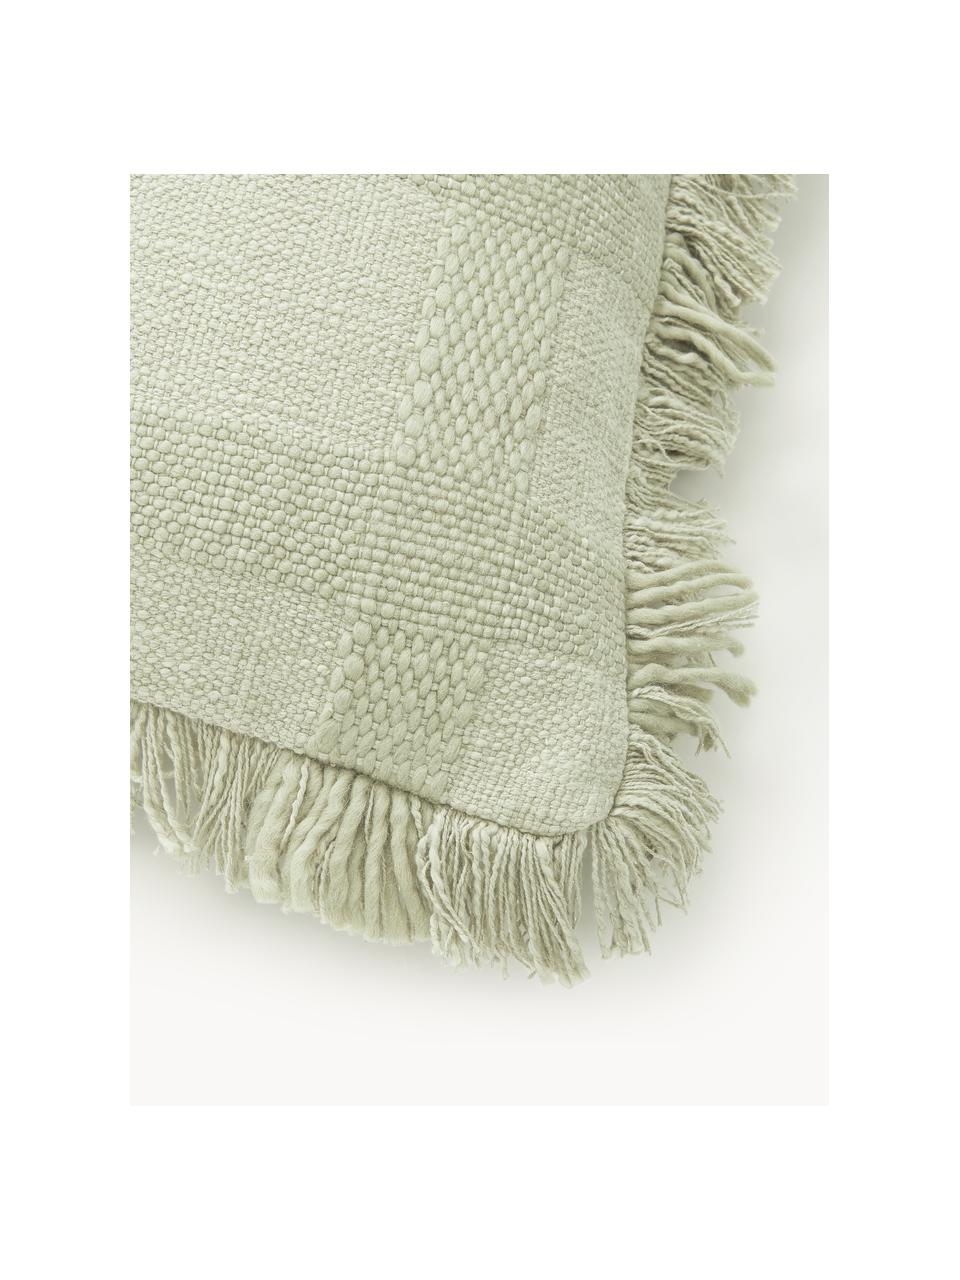 Poszewka na poduszkę z frędzlami w stylu boho Kaspar, 59% bawełna, 41% poliester, Zielony, S 45 x D 45 cm